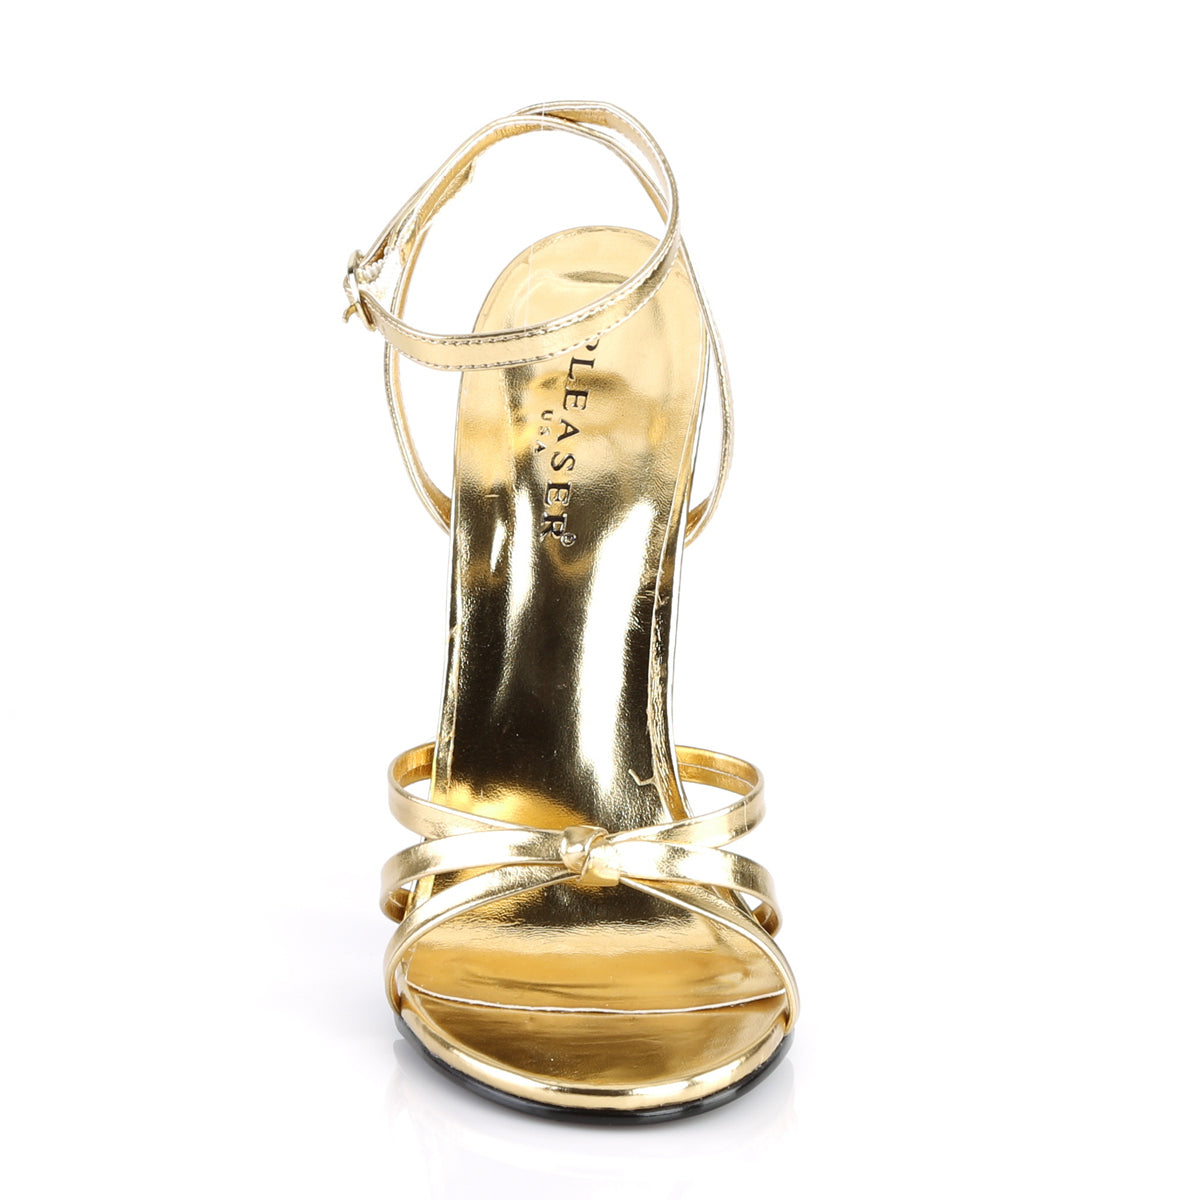 Devious Sandali da donna DOMINA-108 PU metallizzato in oro